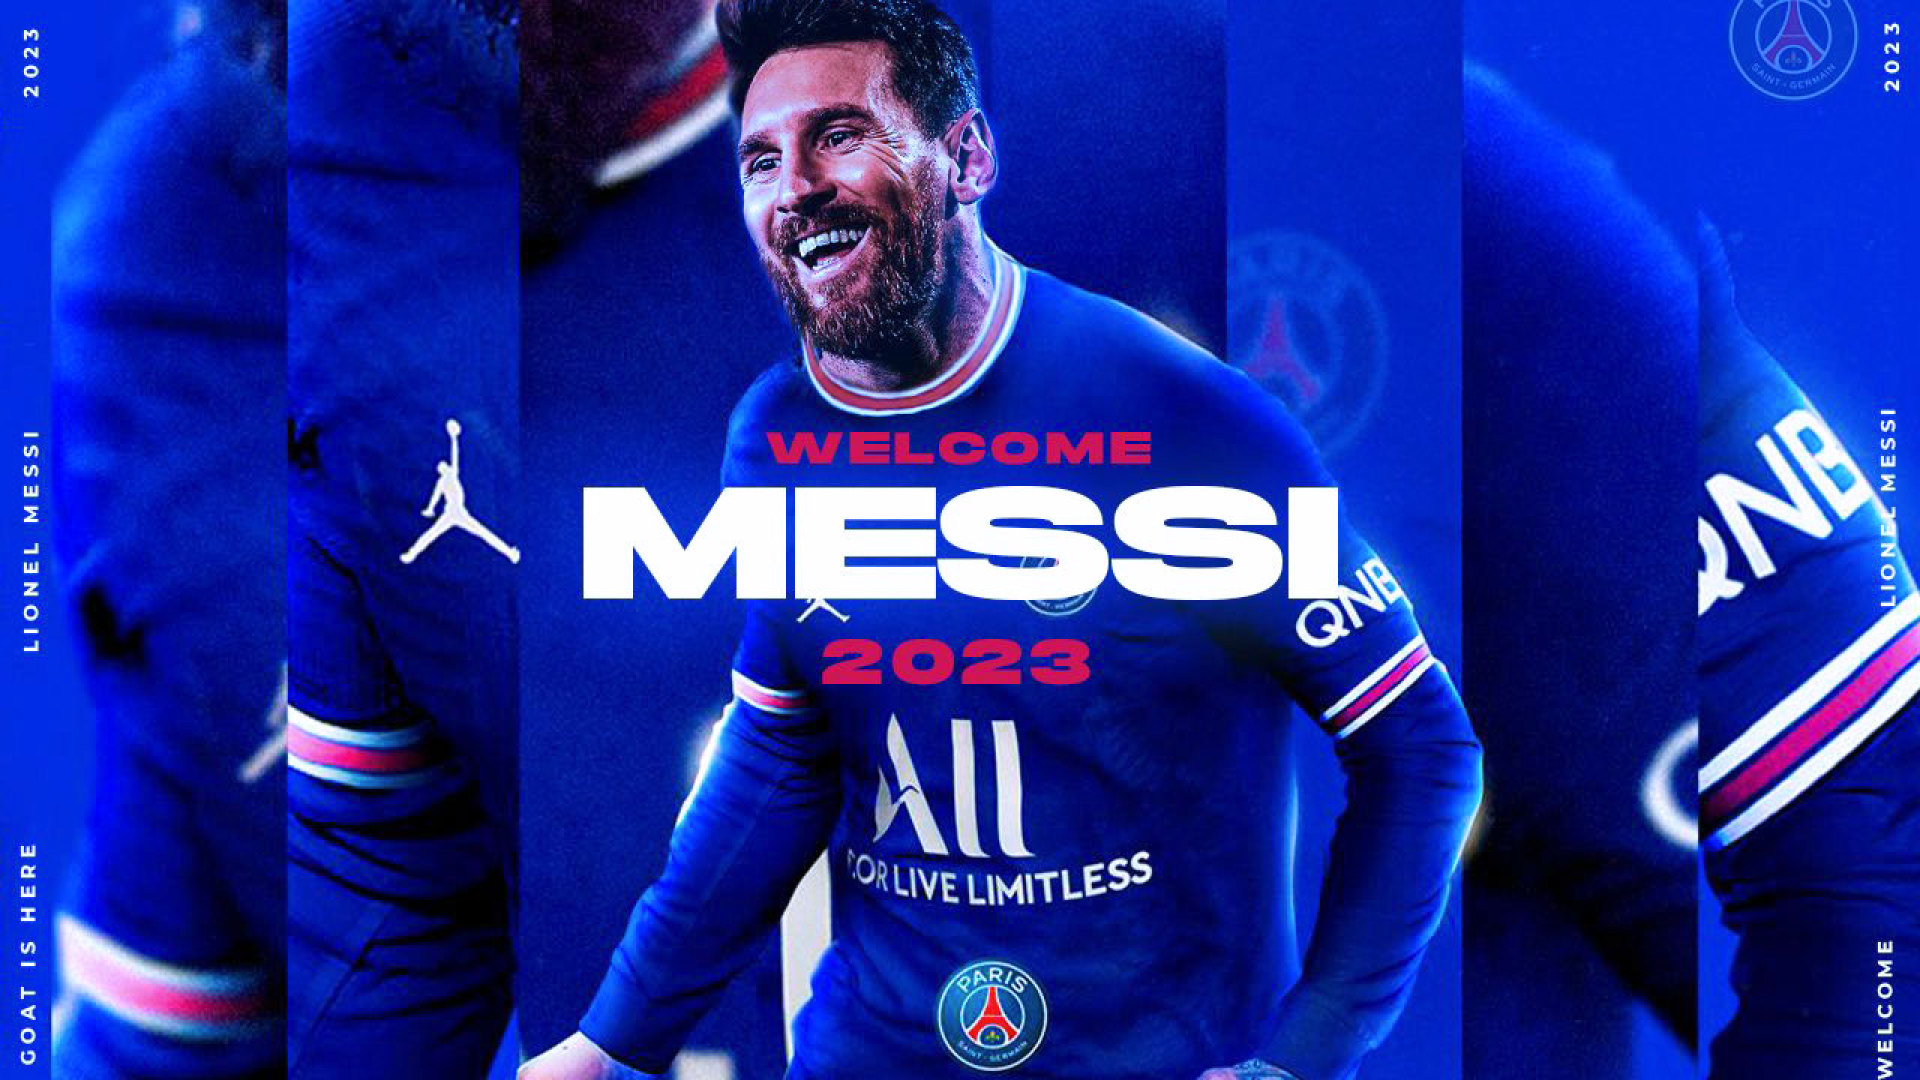 Messi là thành viên mới nhất của PSG, và chắc chắn rằng bạn muốn có một bức tường màn hình để ăn mừng sự thật này. Hãy xem ngay các tùy chọn hình nền mới nhất của chúng tôi, với Lionel Messi trong màu áo làng túc cầu Paris.